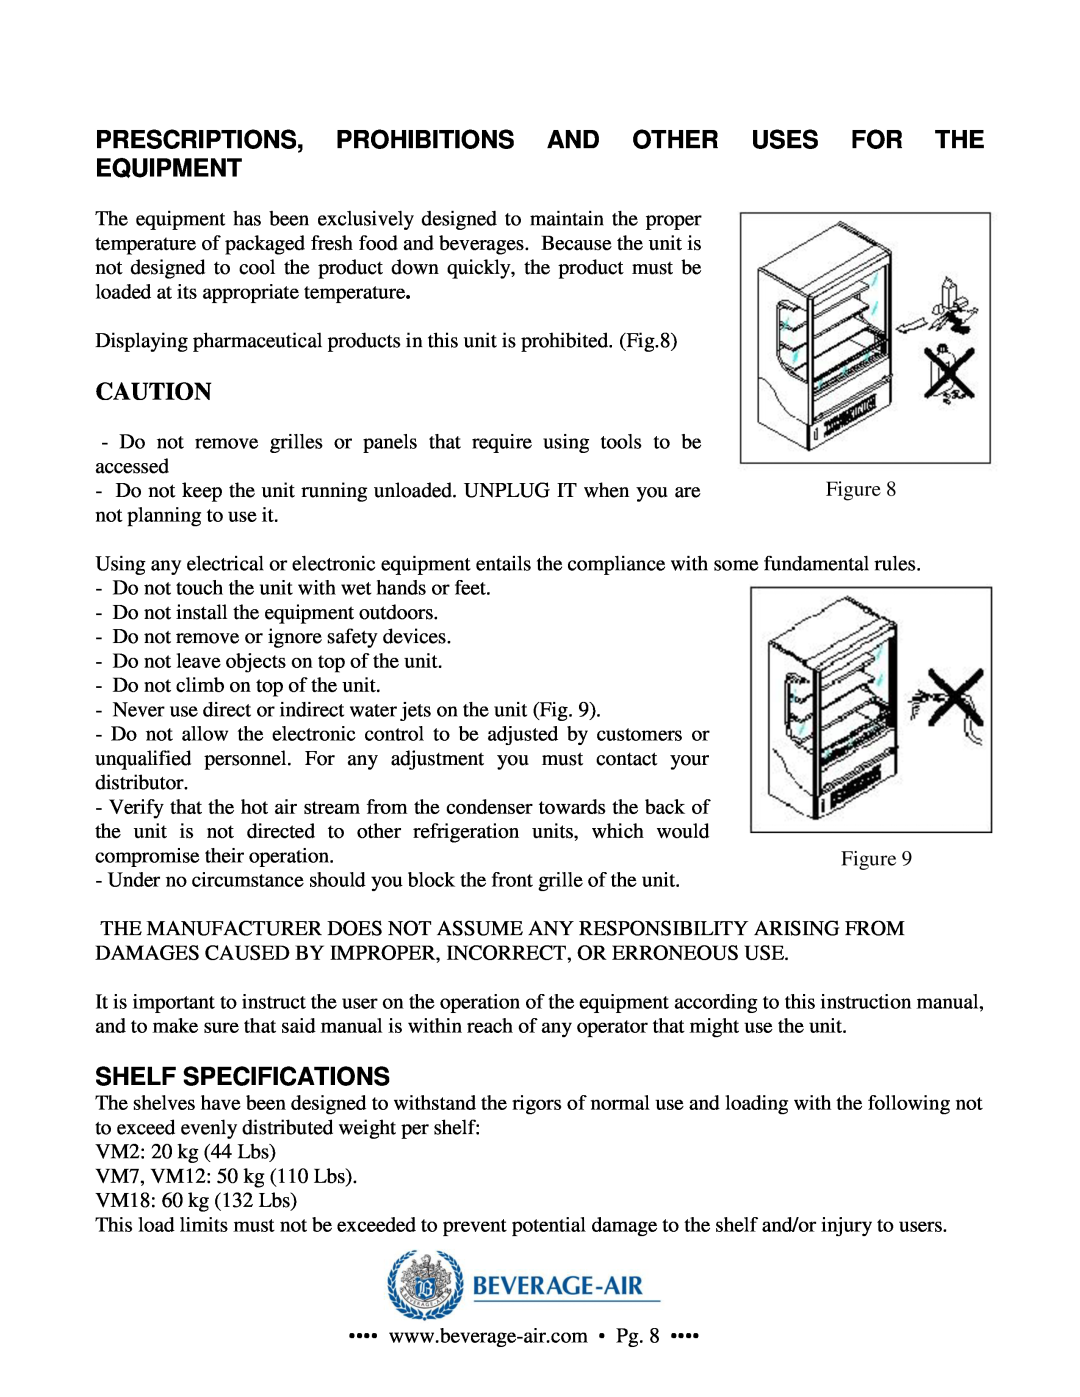 Beverage-Air VM2, VM18, VM7, VM12 operation manual Shelf Specifications 